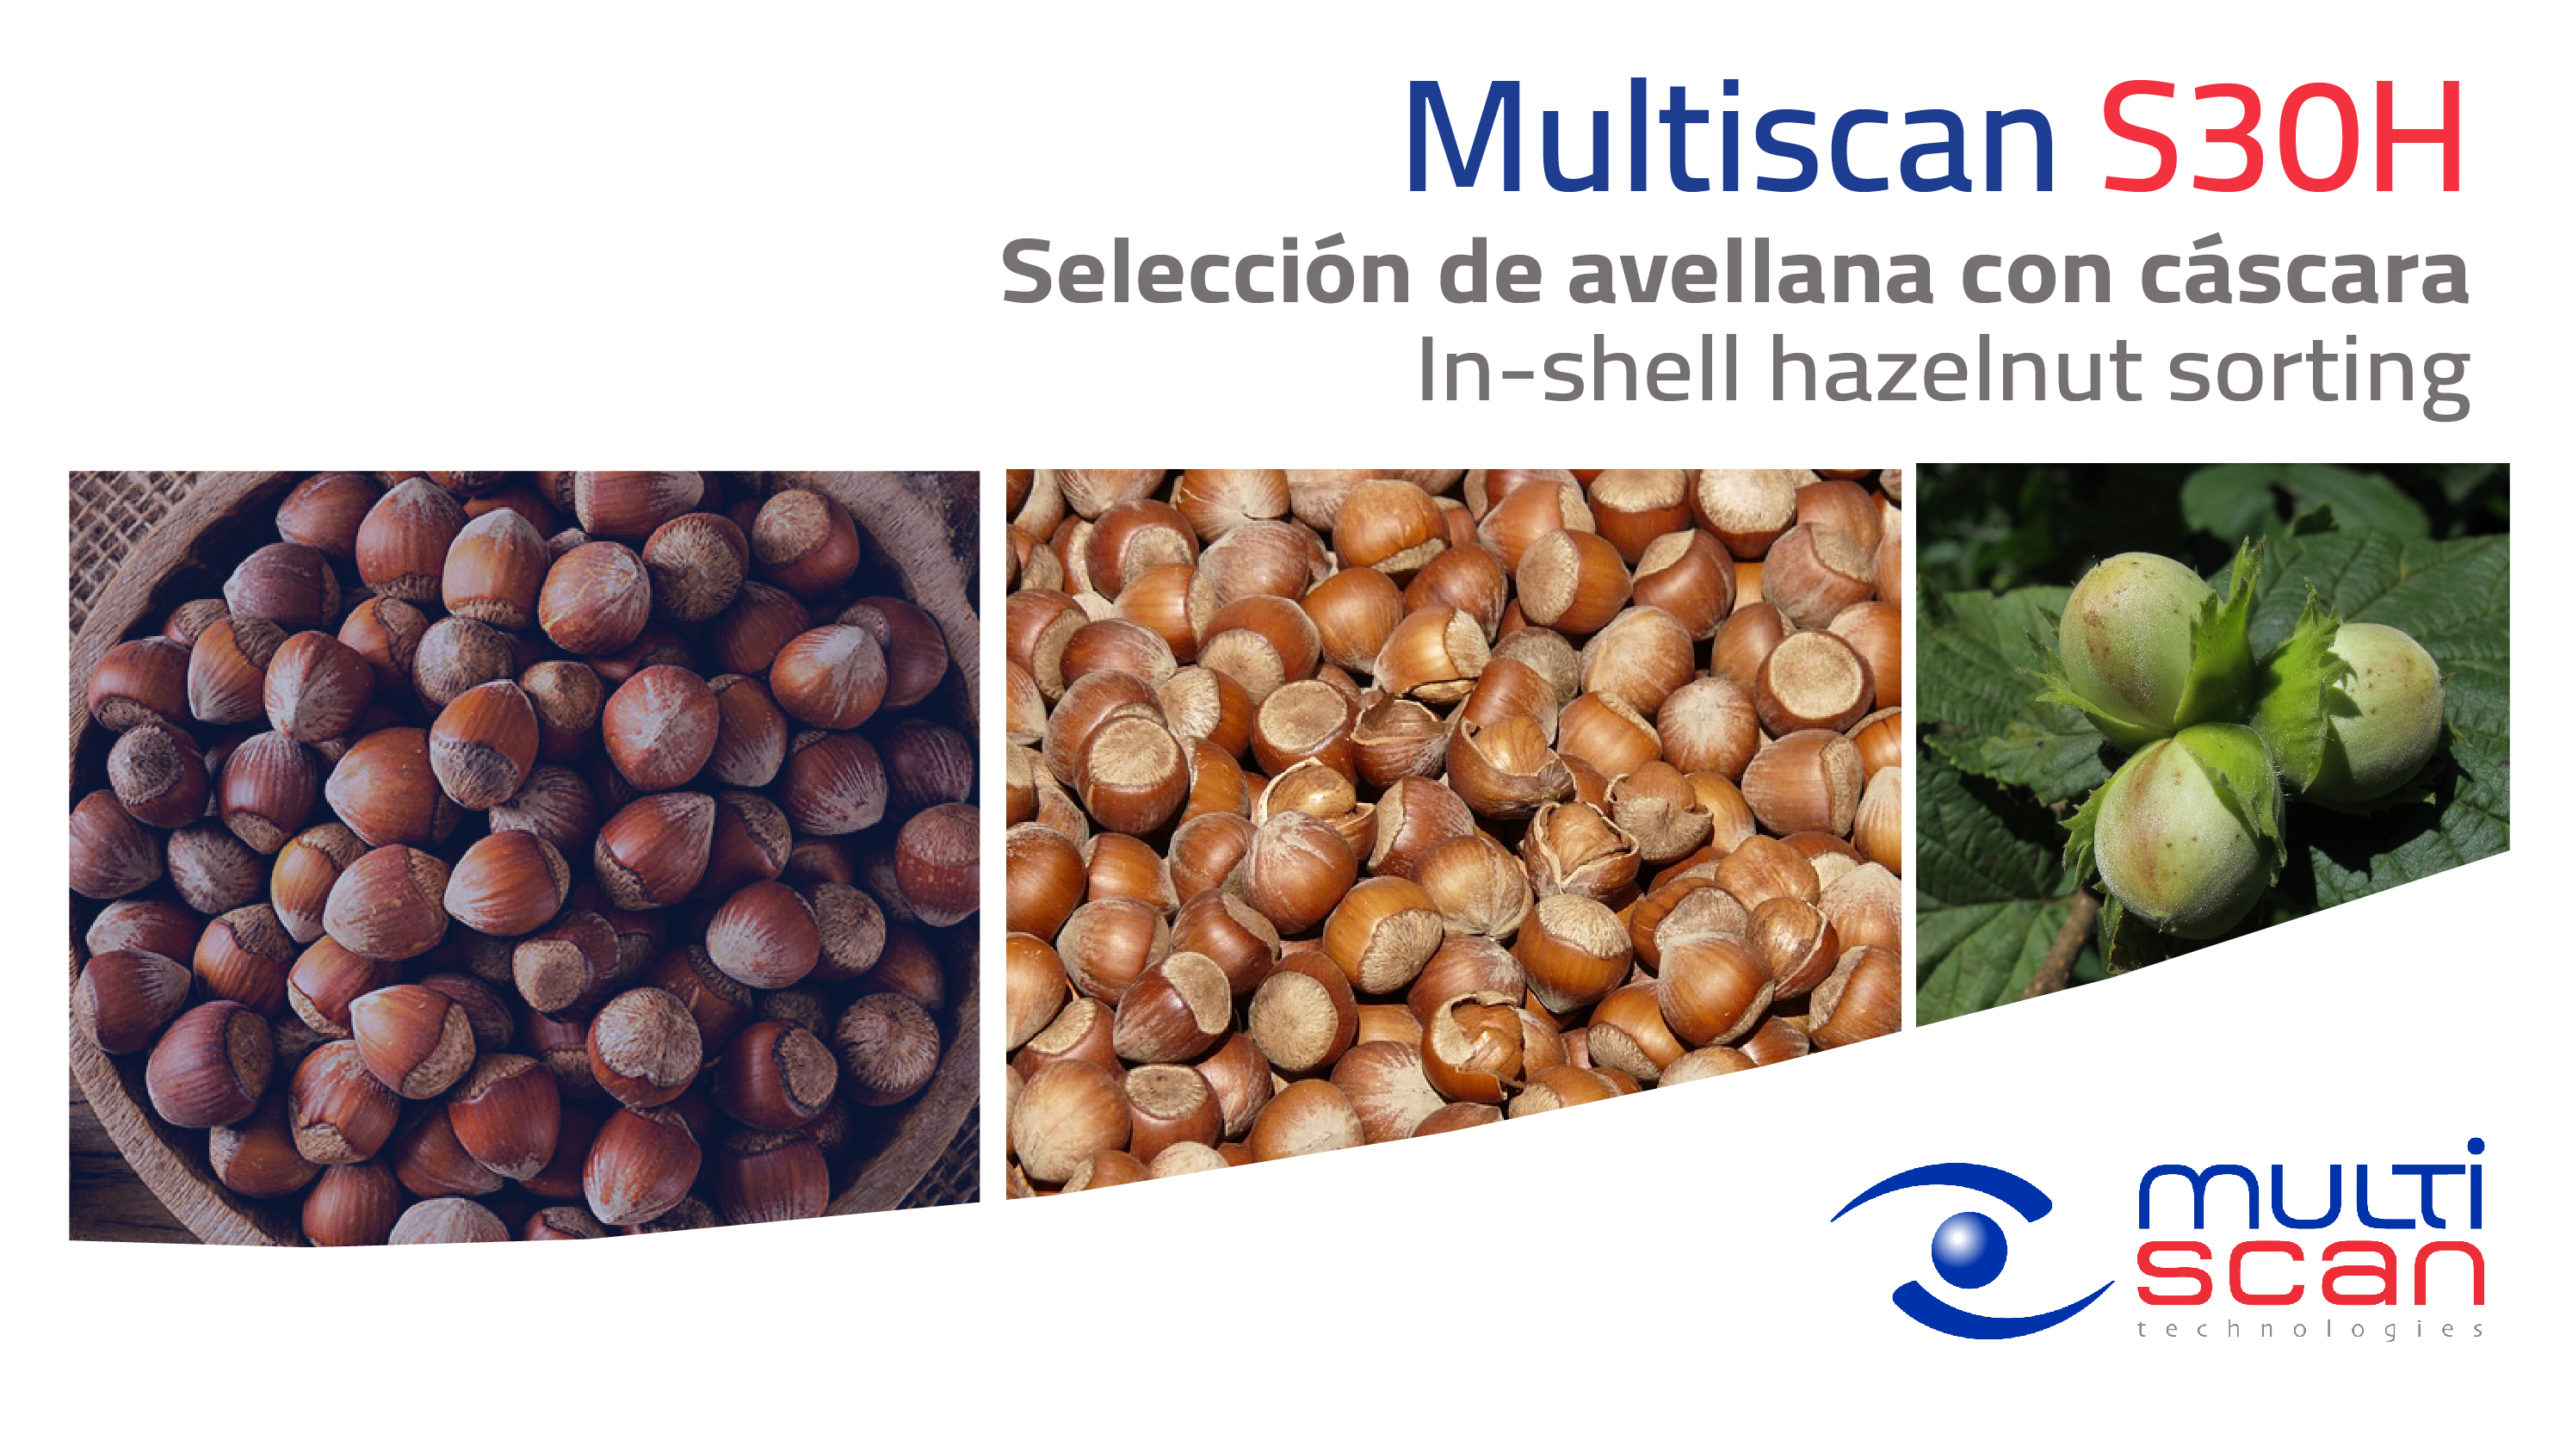 Multiscan S30H para la clasificación por calidad de avellana